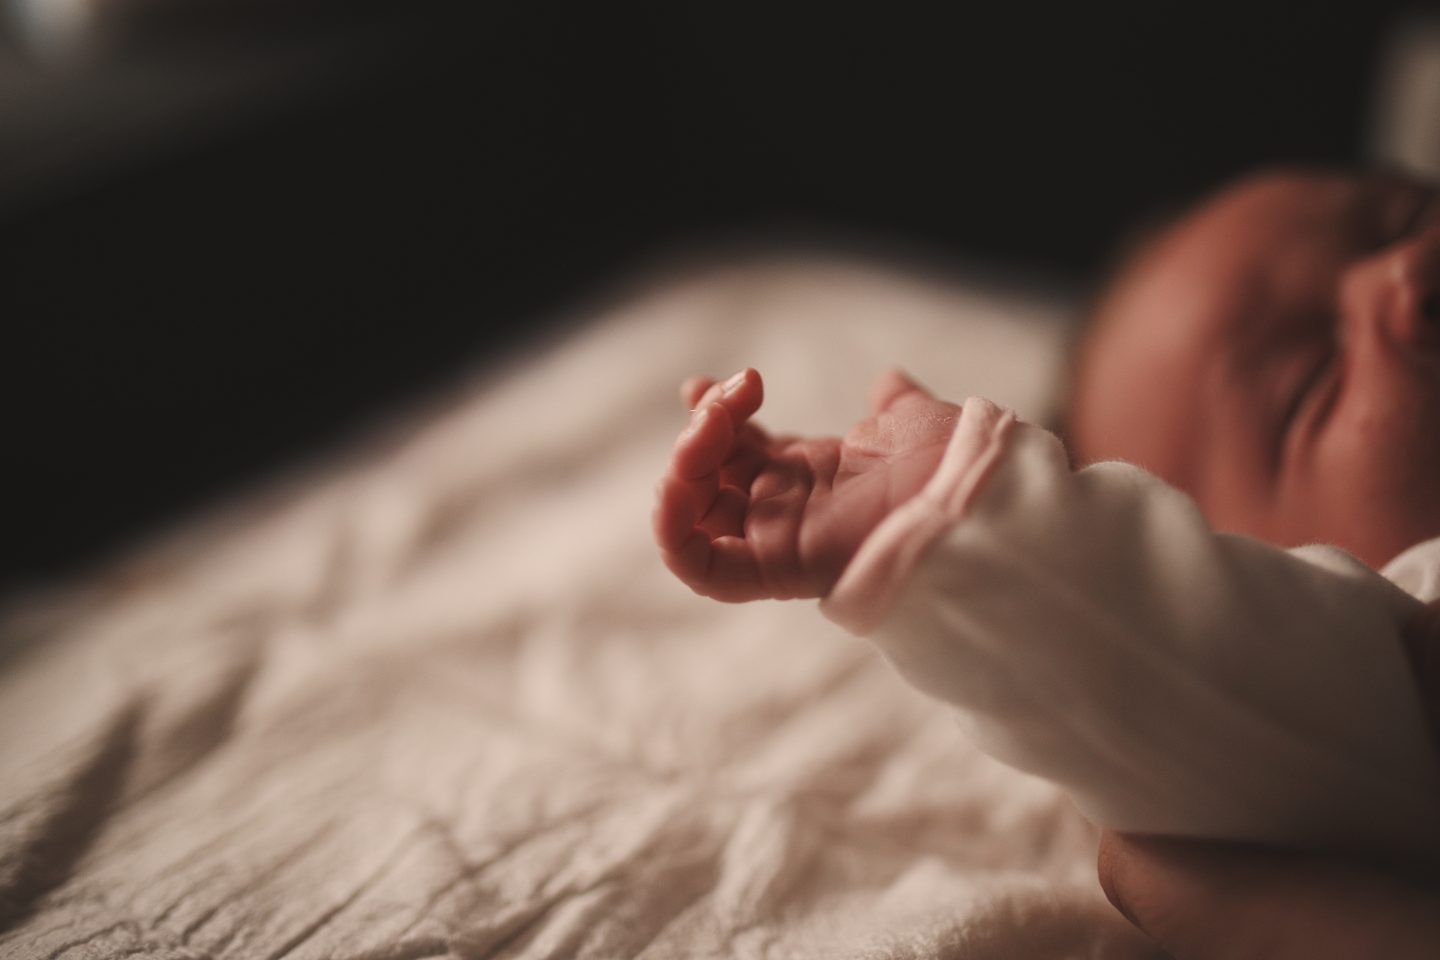 ولادة طفل يزن 7.8 كيلوغرام! ما العوامل التي تزيد خطر ولادة طفل عملاق؟